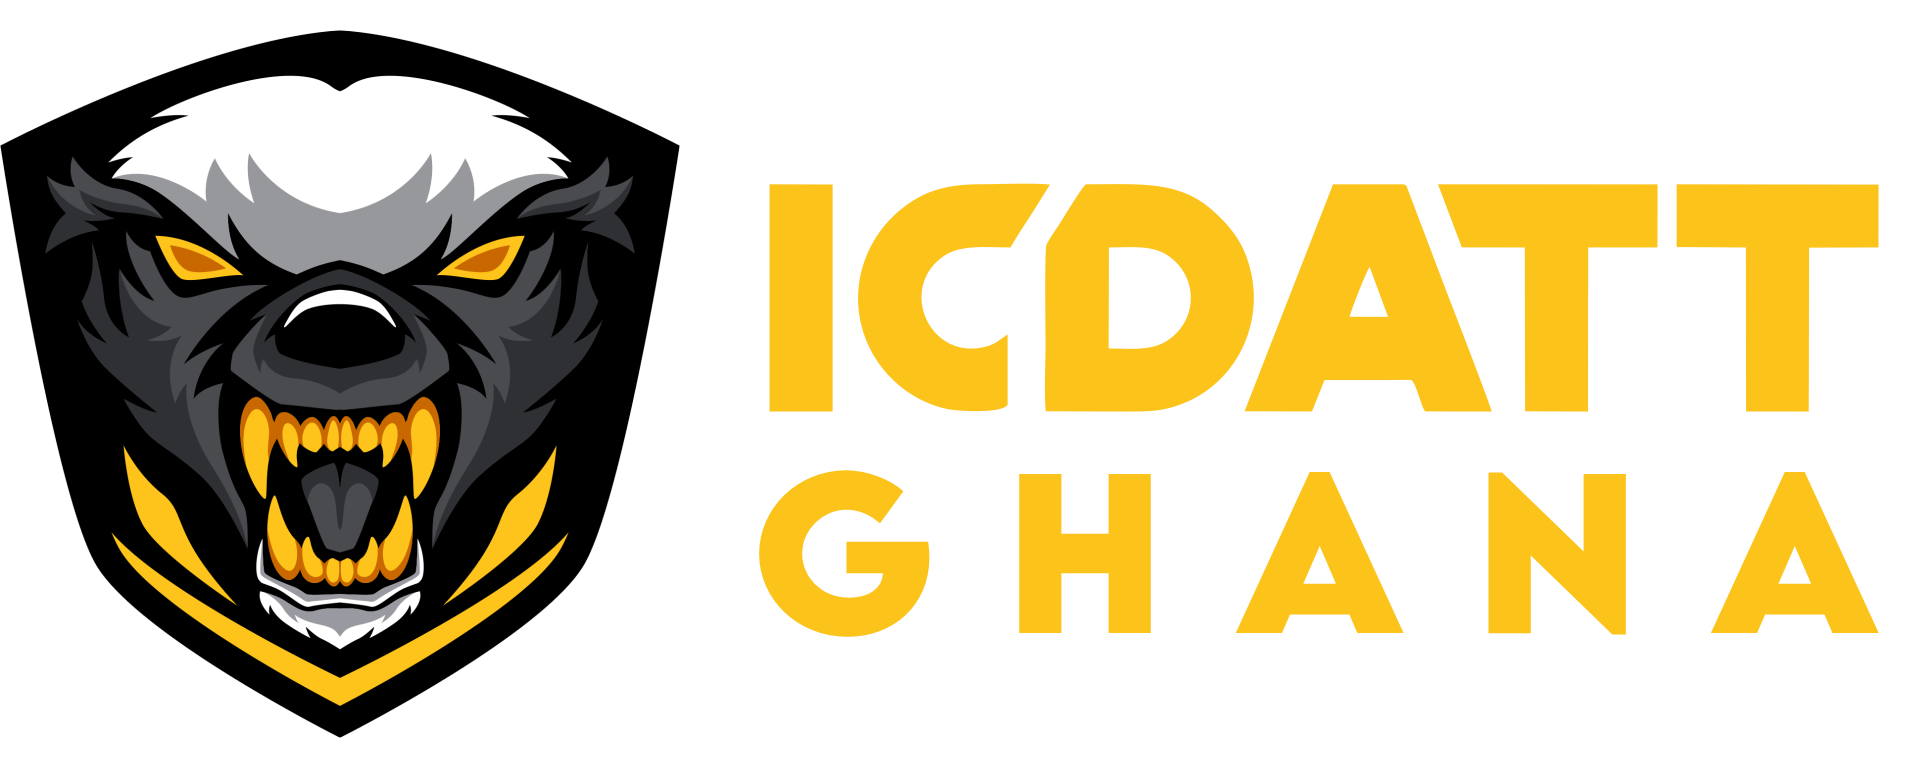 ICDATT Ghana